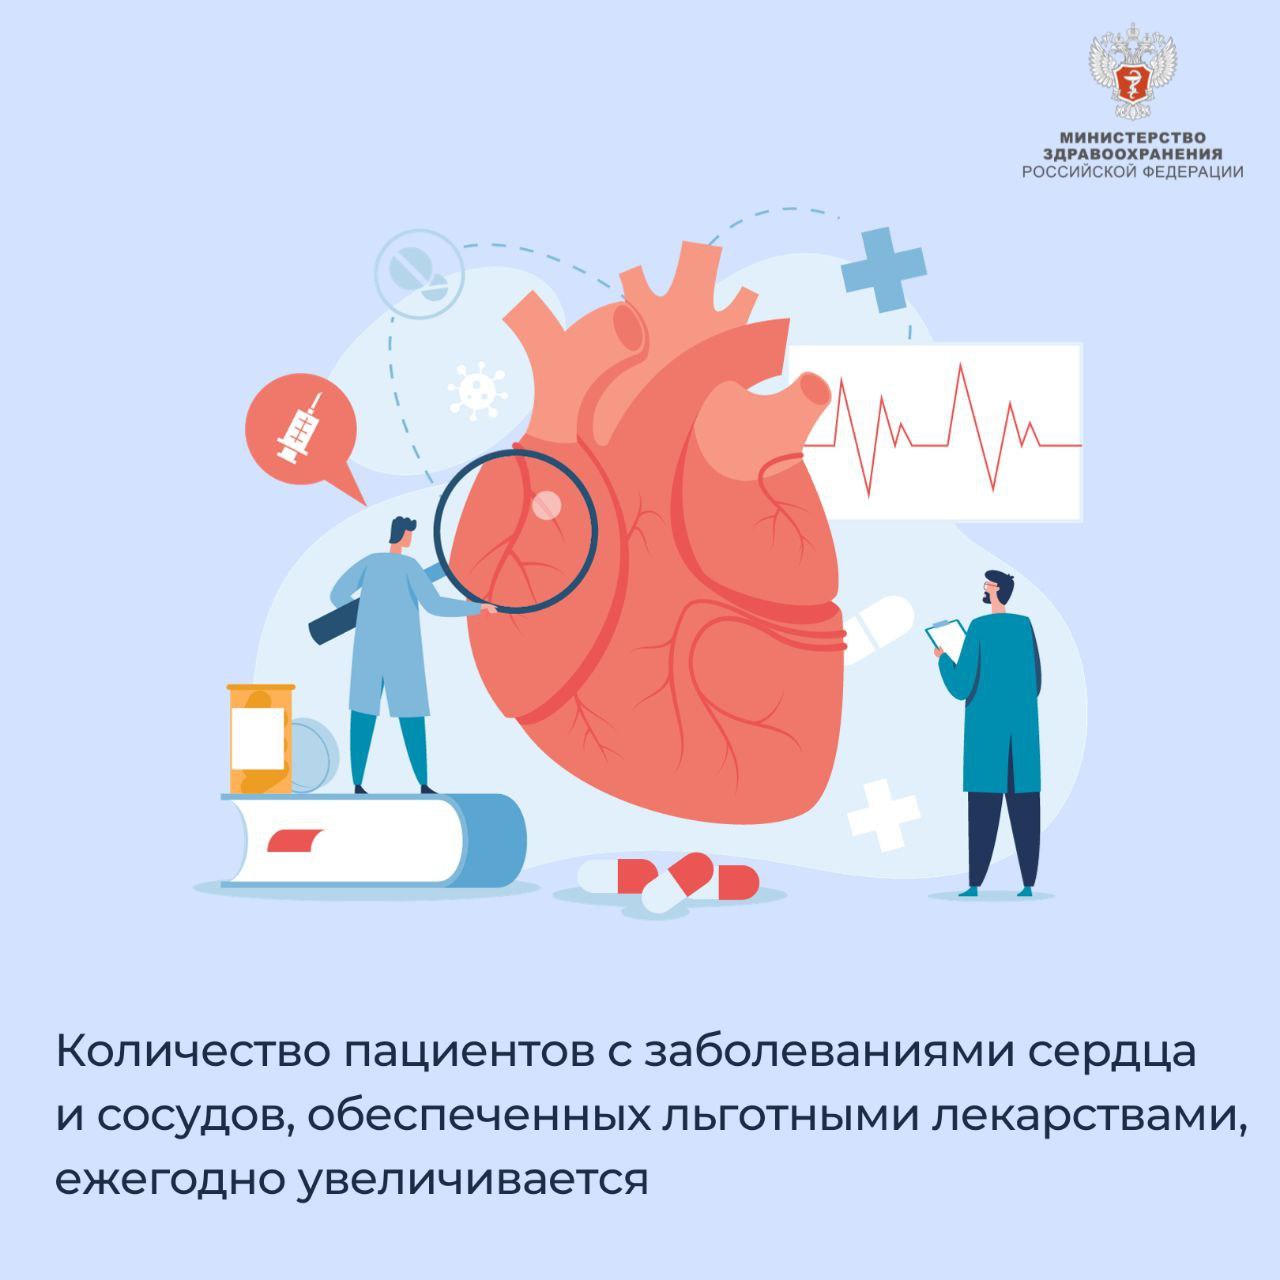 Количество пациентов с заболеваниями сердца и сосудов, обеспеченных льготными лекарствами, ежегодно увеличивается